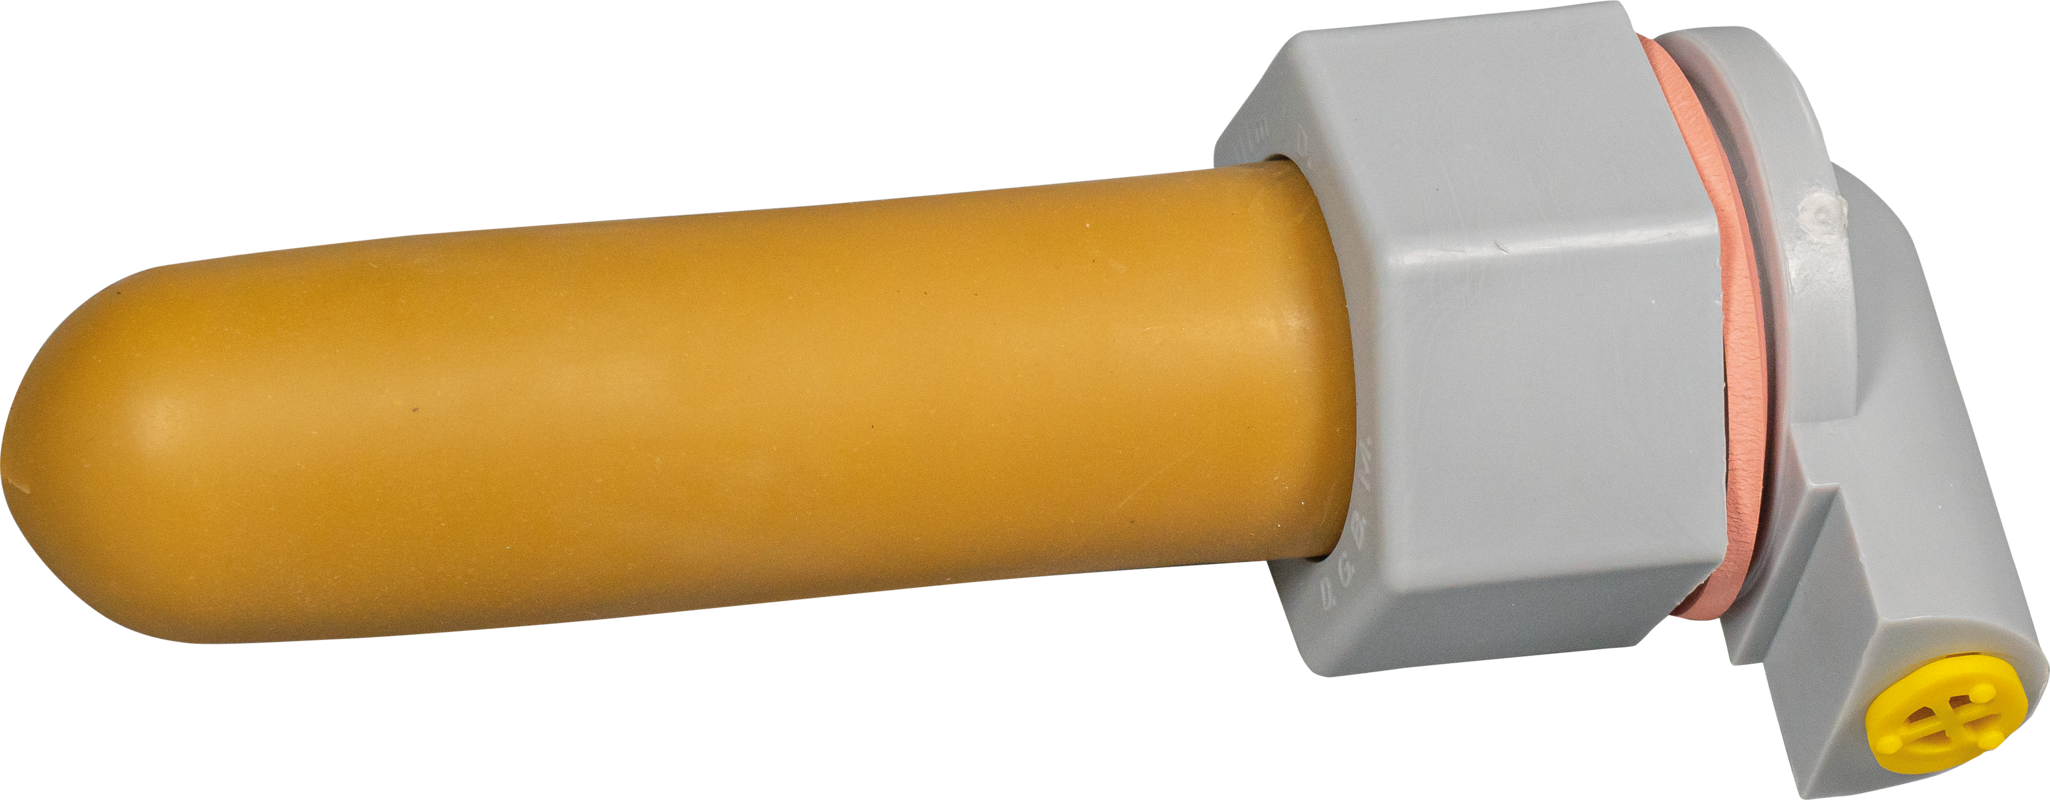 Sauger, weich (beige) mit Kugelventil für Nuckel-Tränkeeimer und Kälber-Tränkeflasche Profi